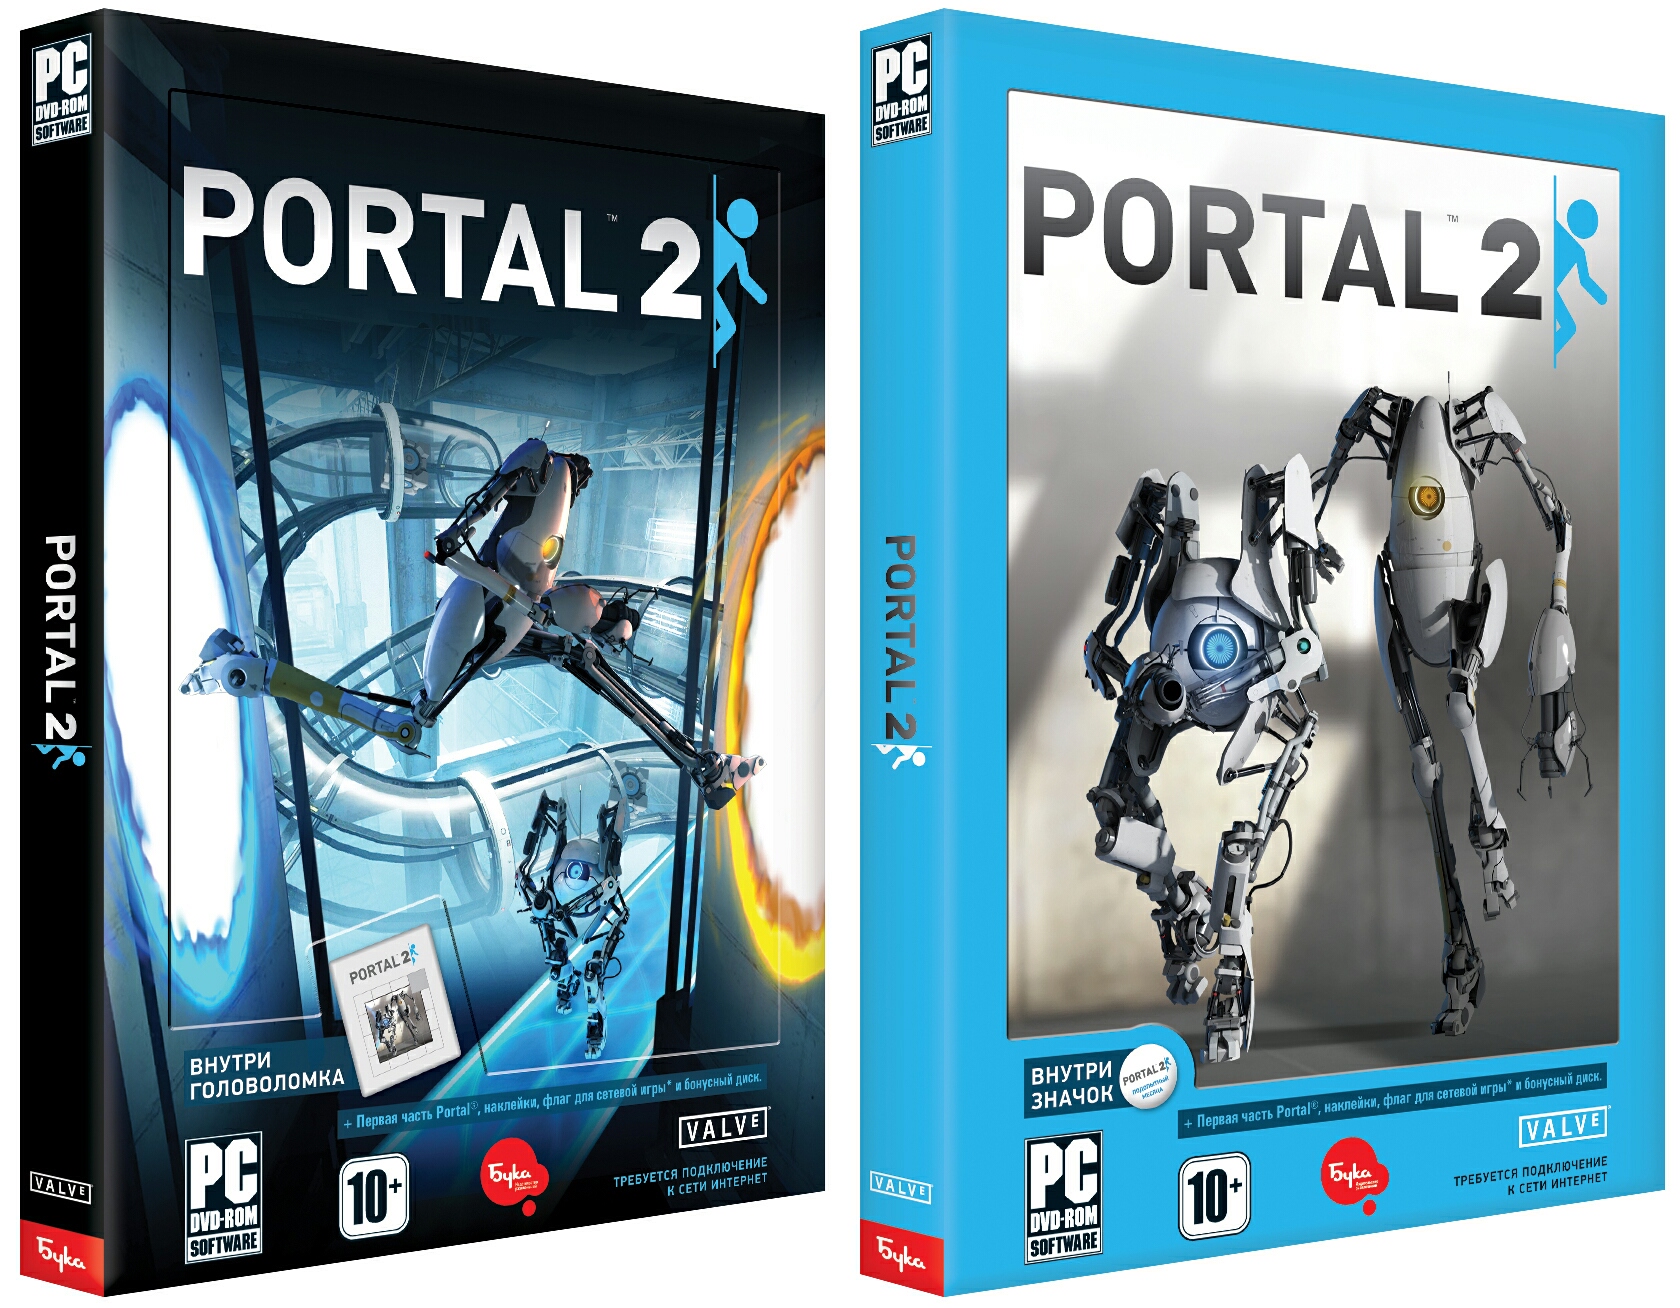 Portal 2 no dvd фото 25